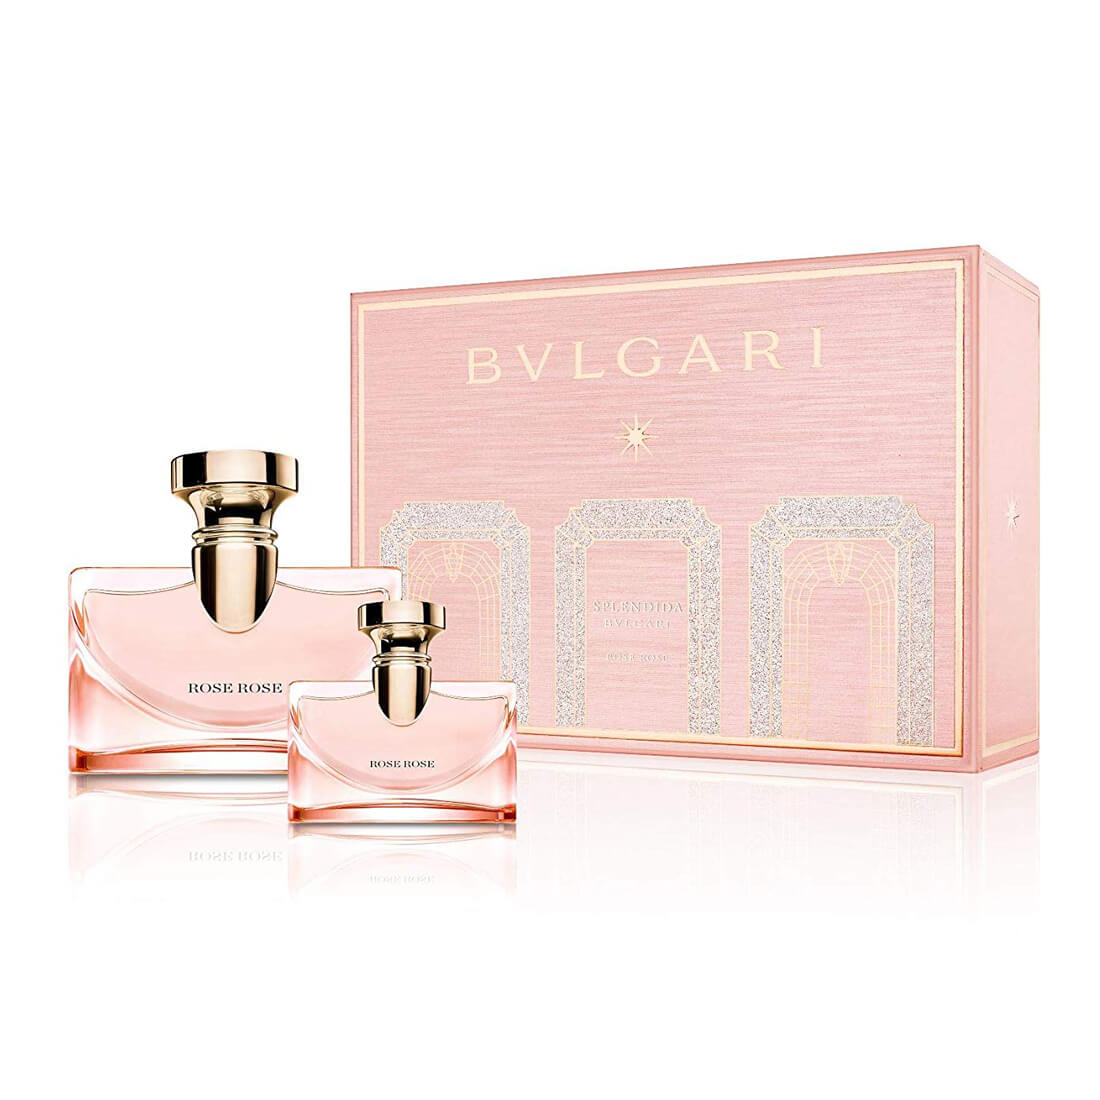 bvlgari women's perfume gift set